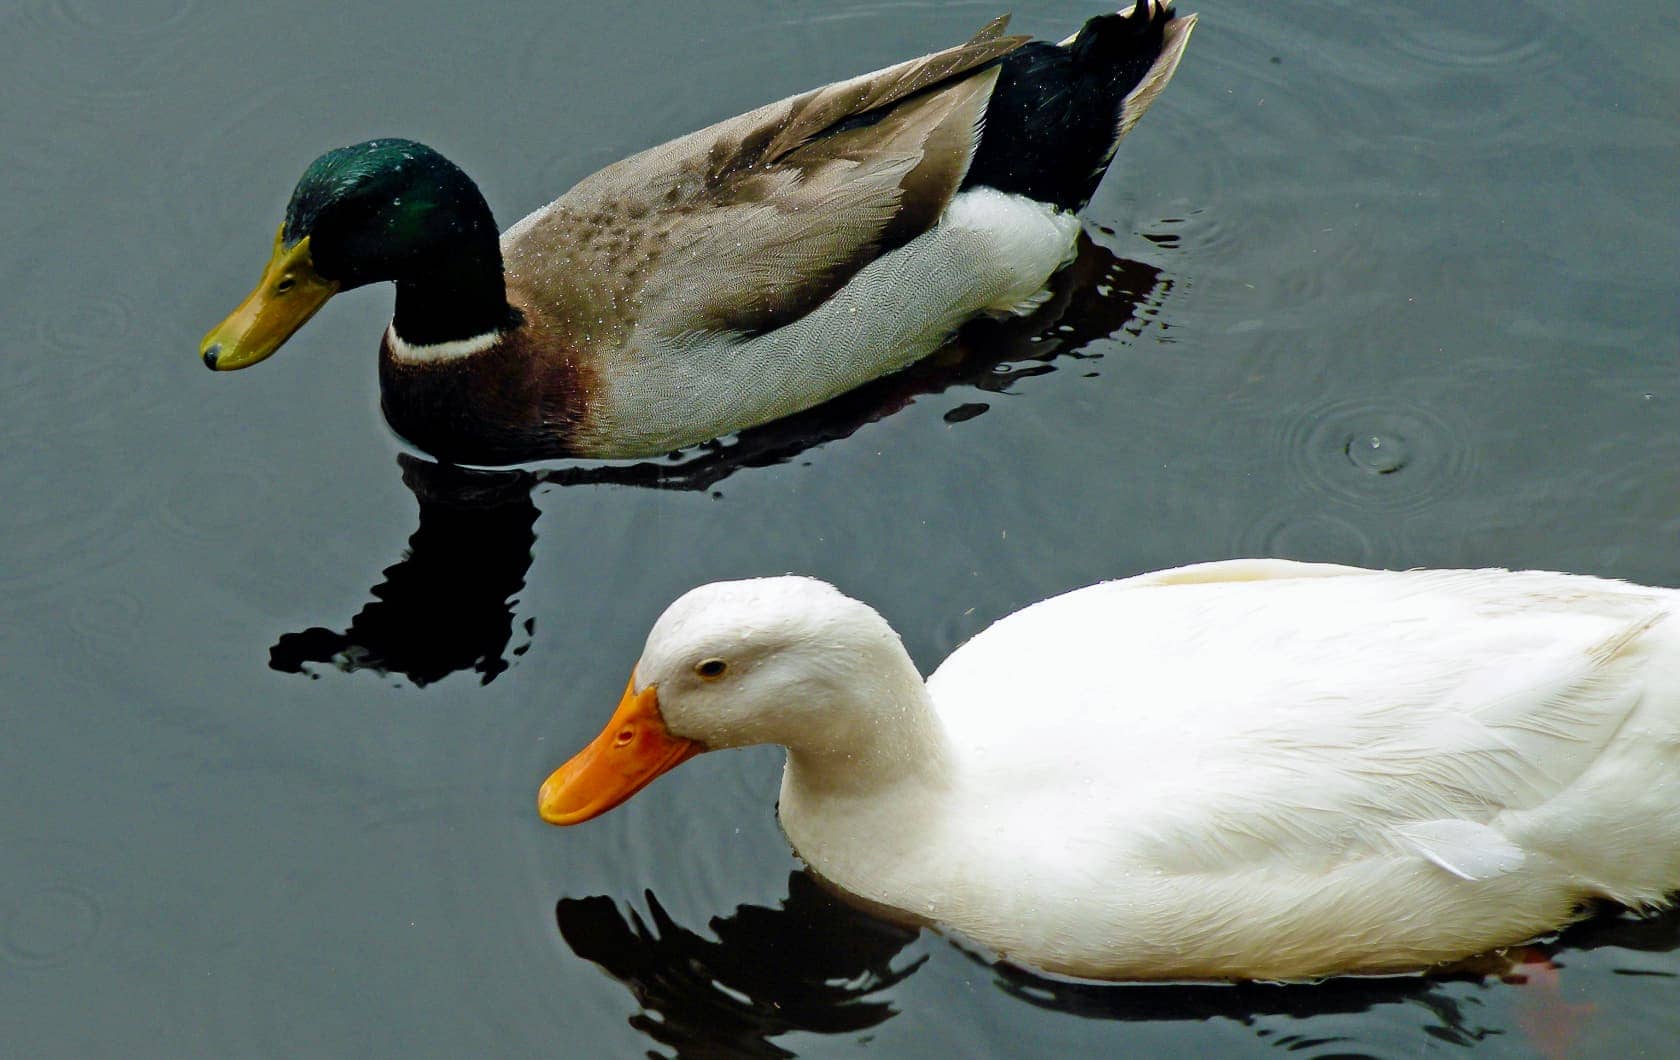 Mallard and white ducks swimming in water